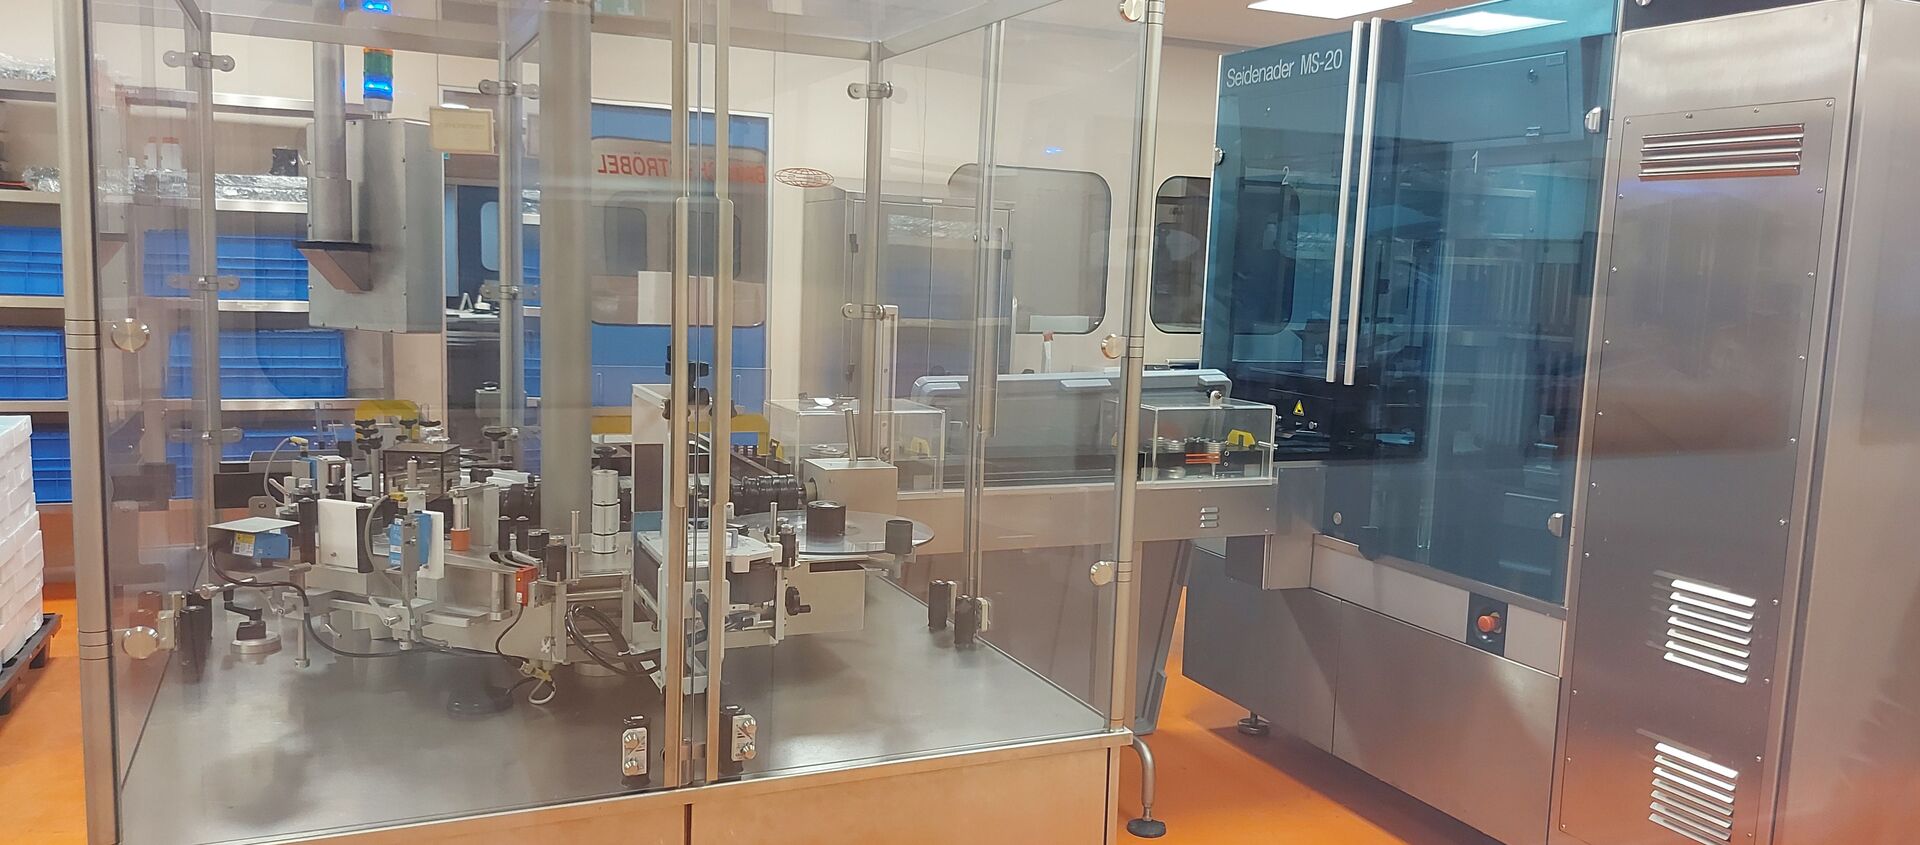 مصنع أروان للصناعات الدوائية اللبنانية يستعد لتصنيع لقاح سبوتنيك، لبنان 4 يونيو 2021 - سبوتنيك عربي, 1920, 07.09.2021